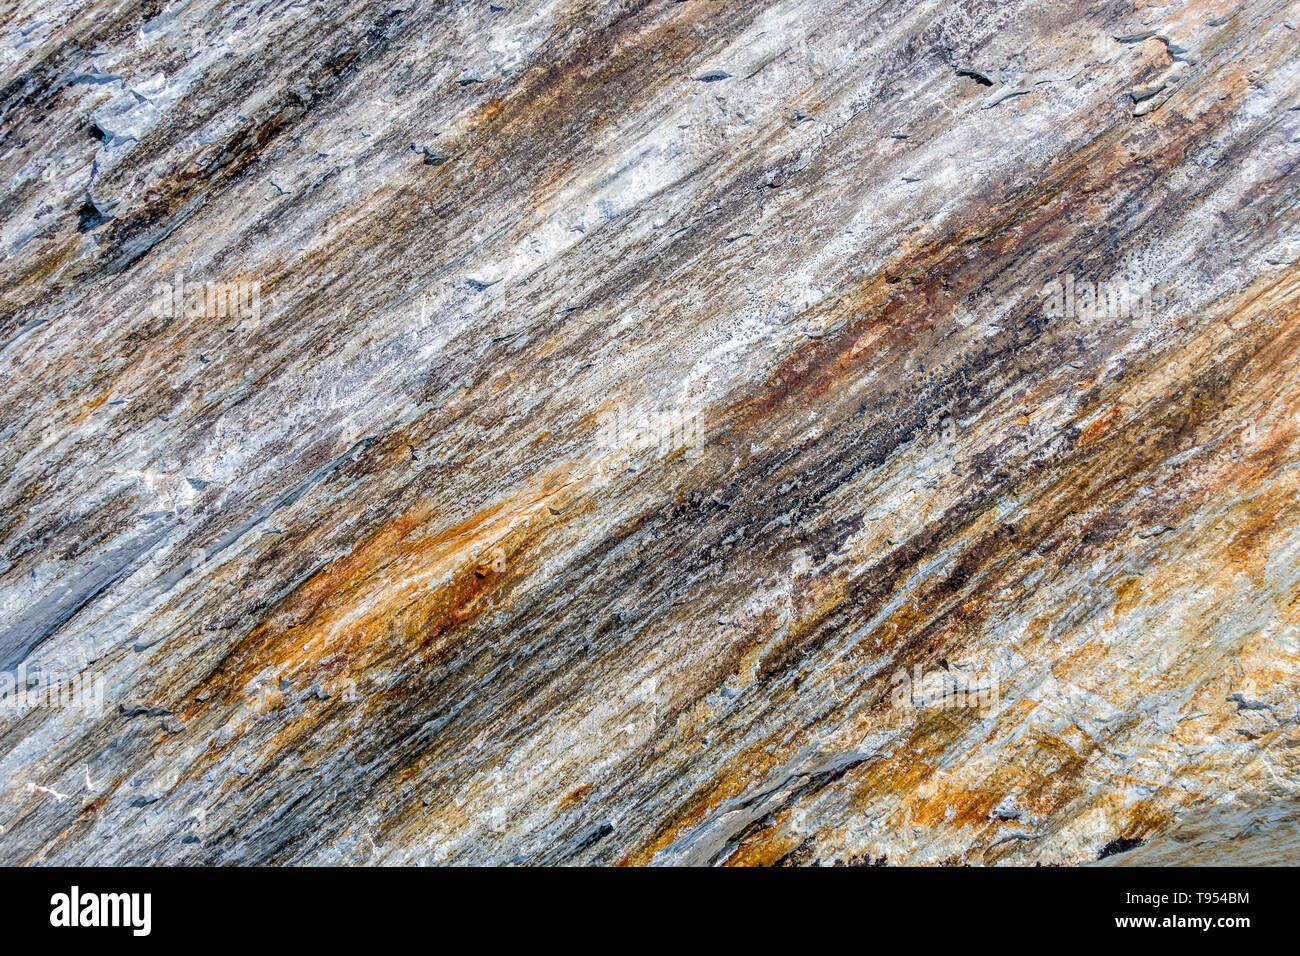 Alpine Felswand mit diagonal Schichten des Materials Rock Einlagen geben mehrere Farben und sichtbaren Eisen, um die strukturierte Oberfläche Stockfoto